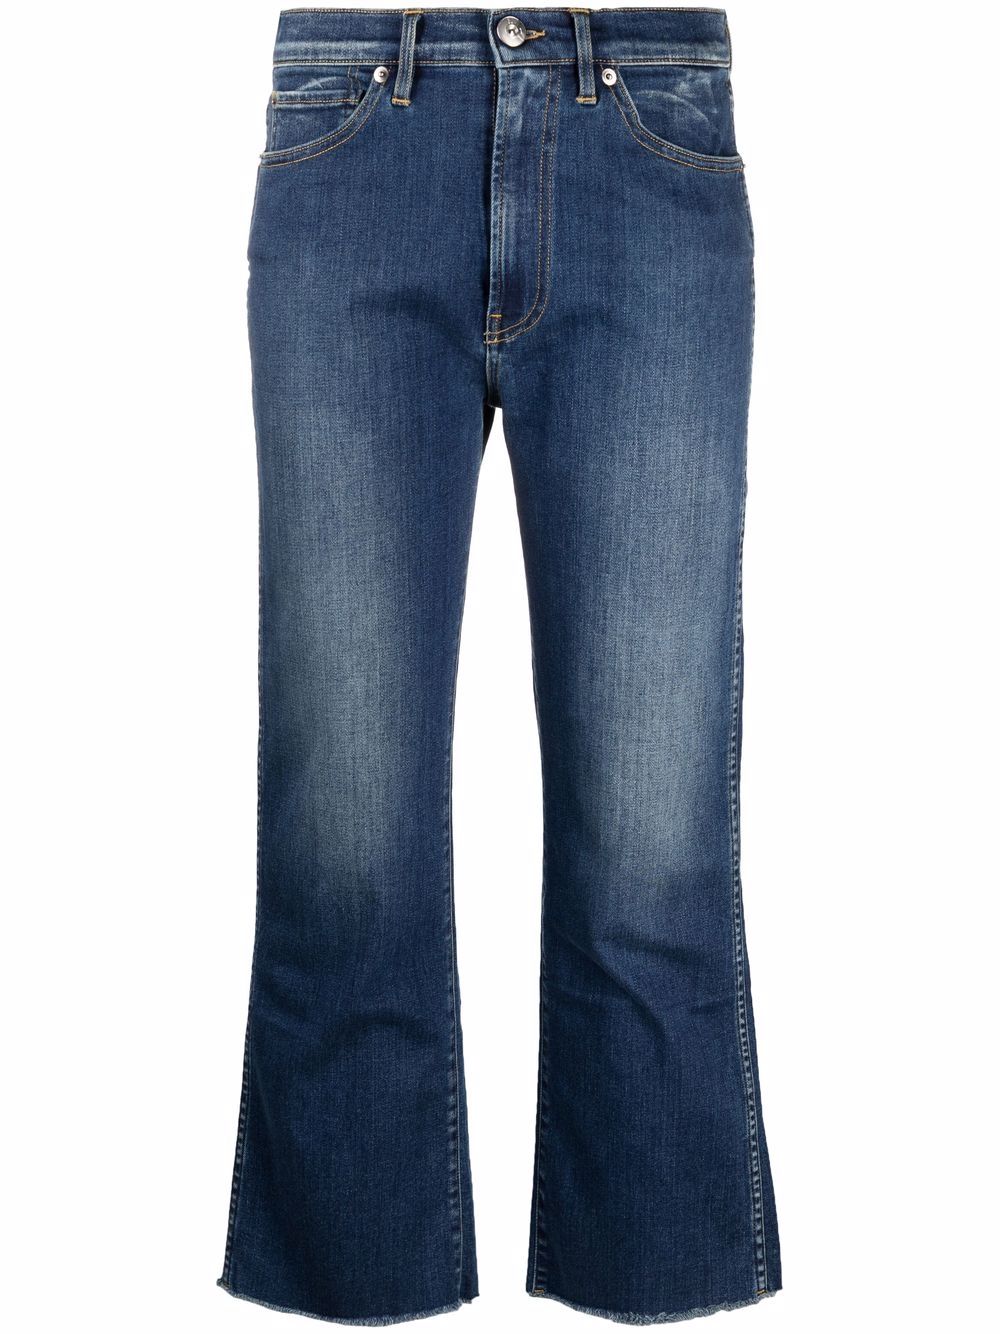 фото 3x1 расклешенные джинсы